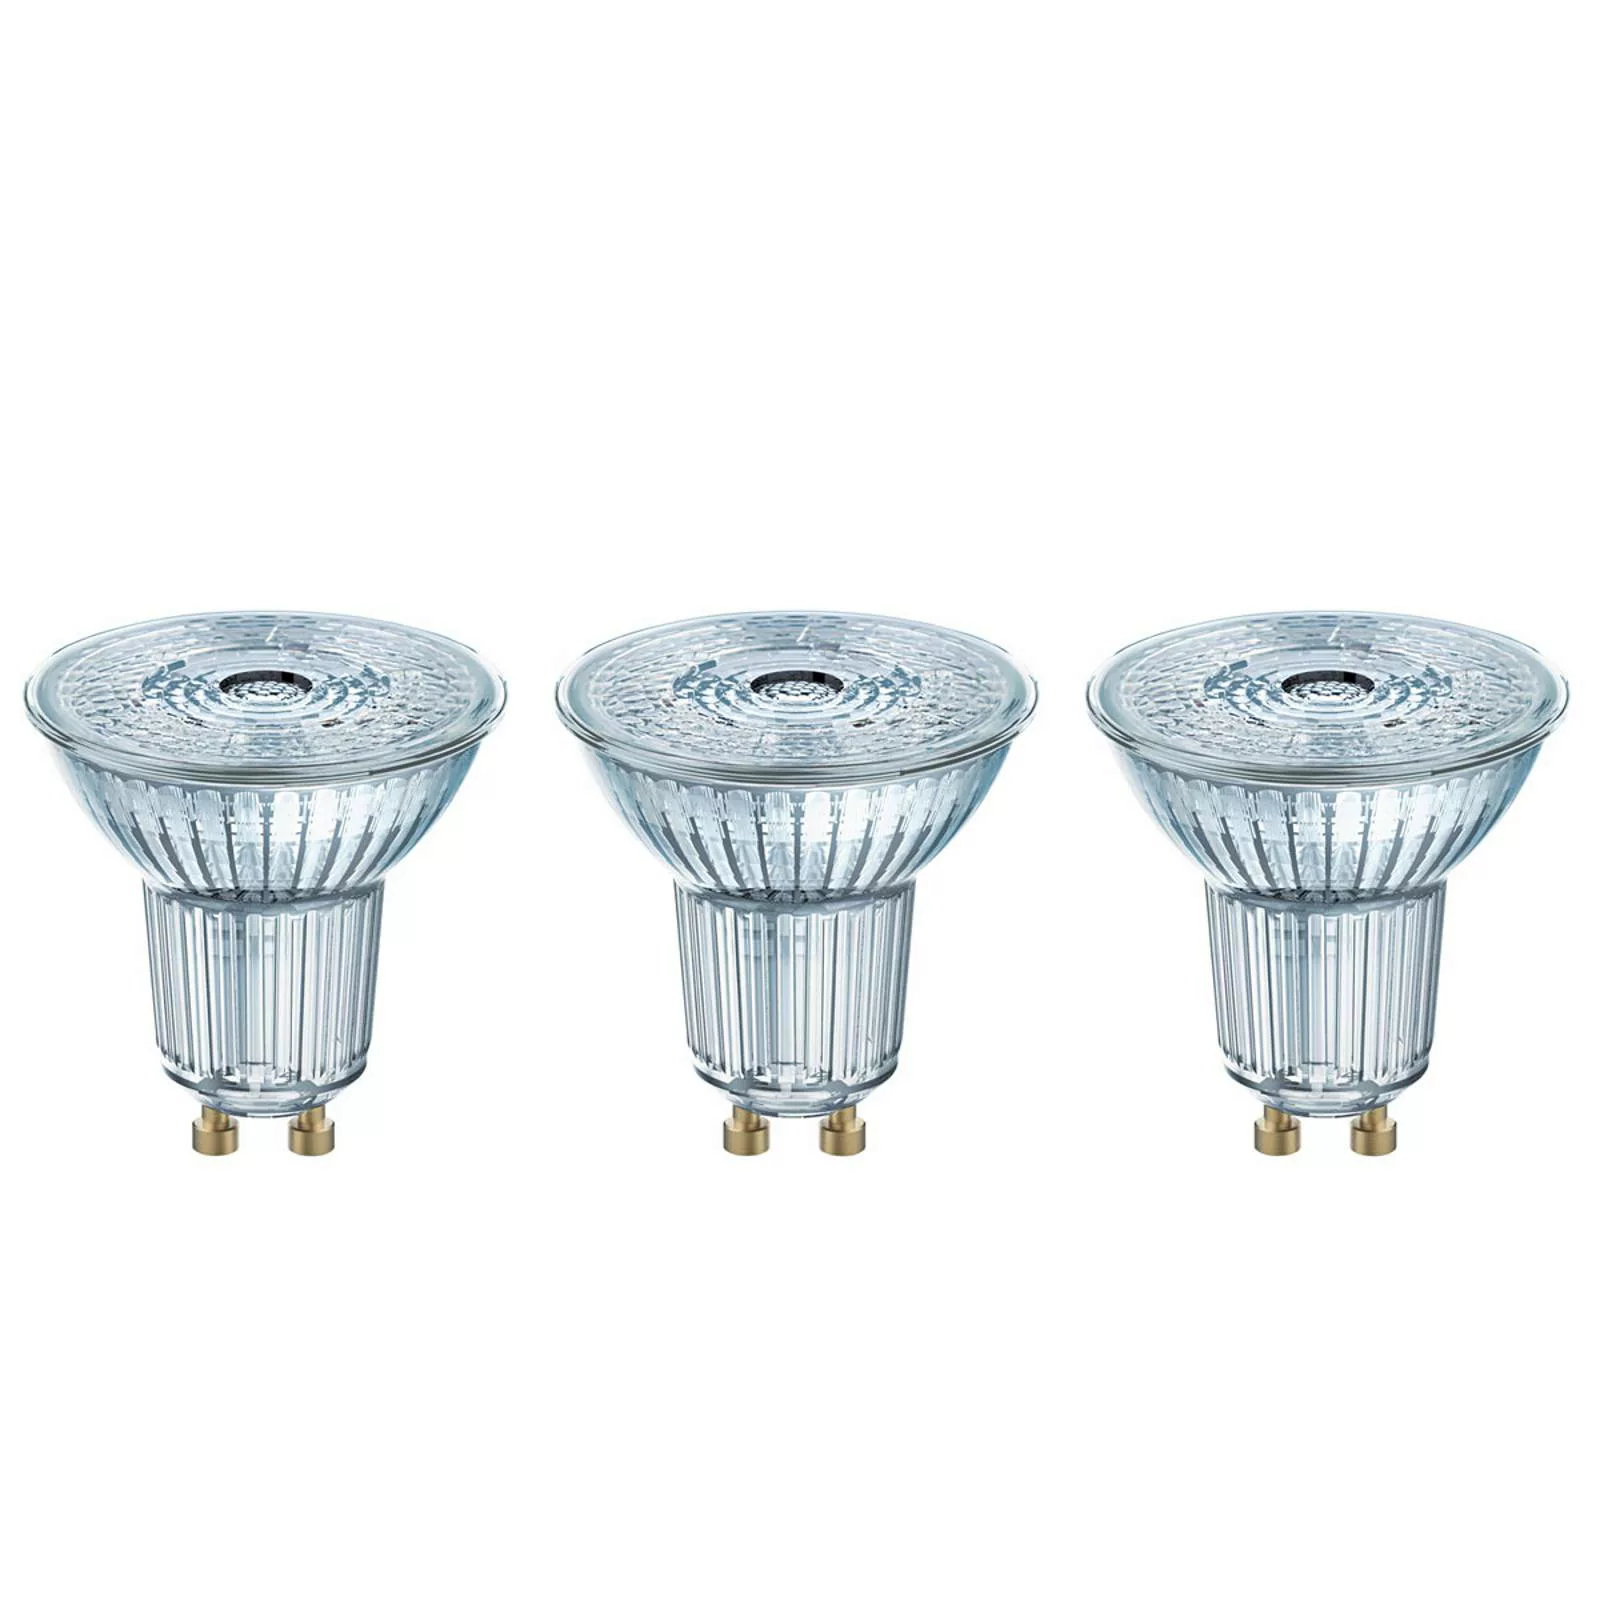 LED-Reflektor GU10 4,3W, universalweiß, 3er-Set günstig online kaufen